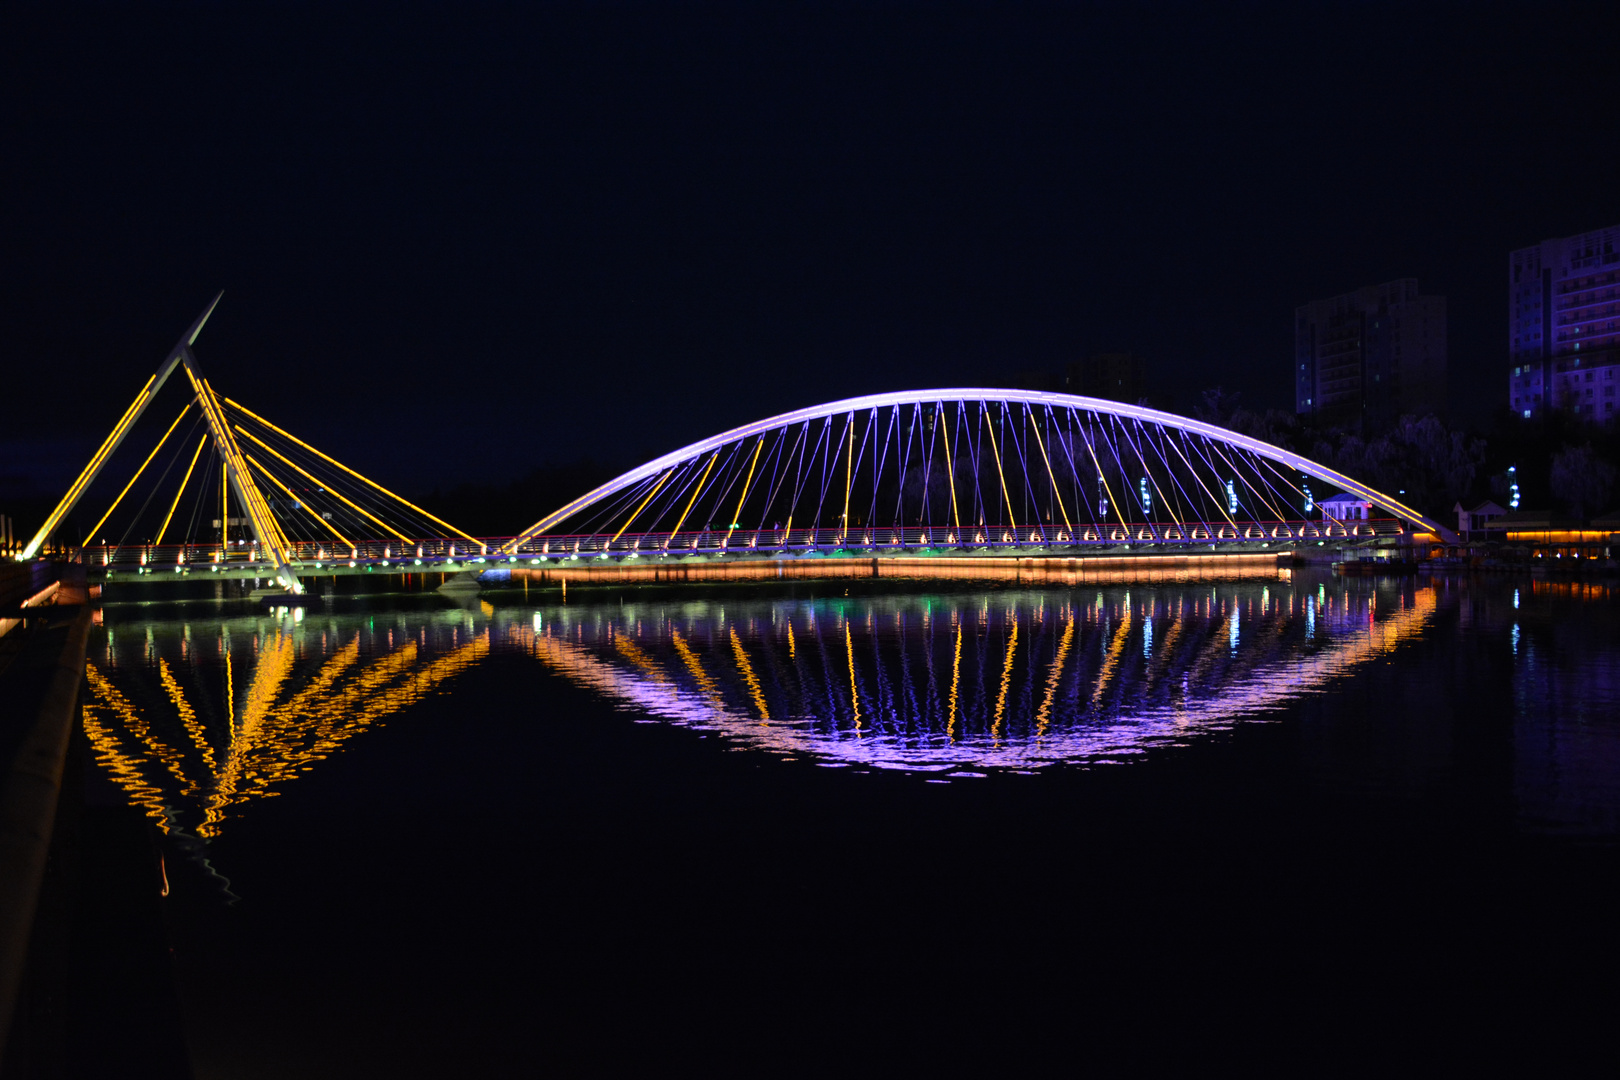 Per le vie di Qingdao (Cina) - the Fish Bridge